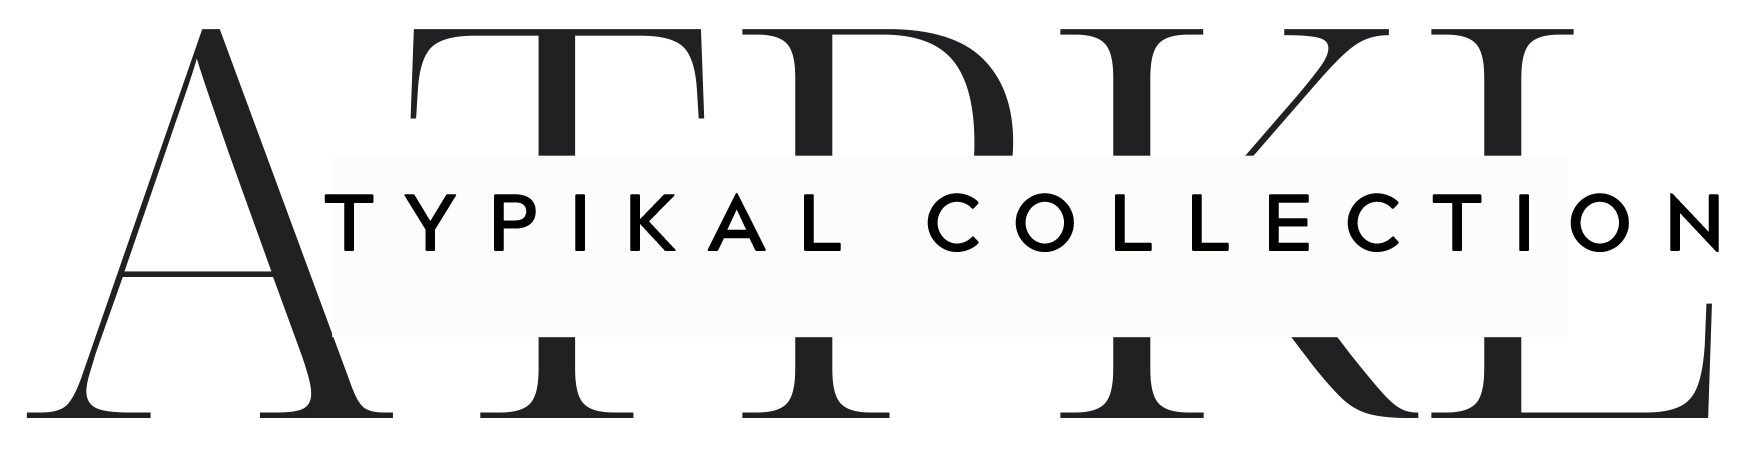 ATPKL Logo (300 x 300 px) (Email Signature)